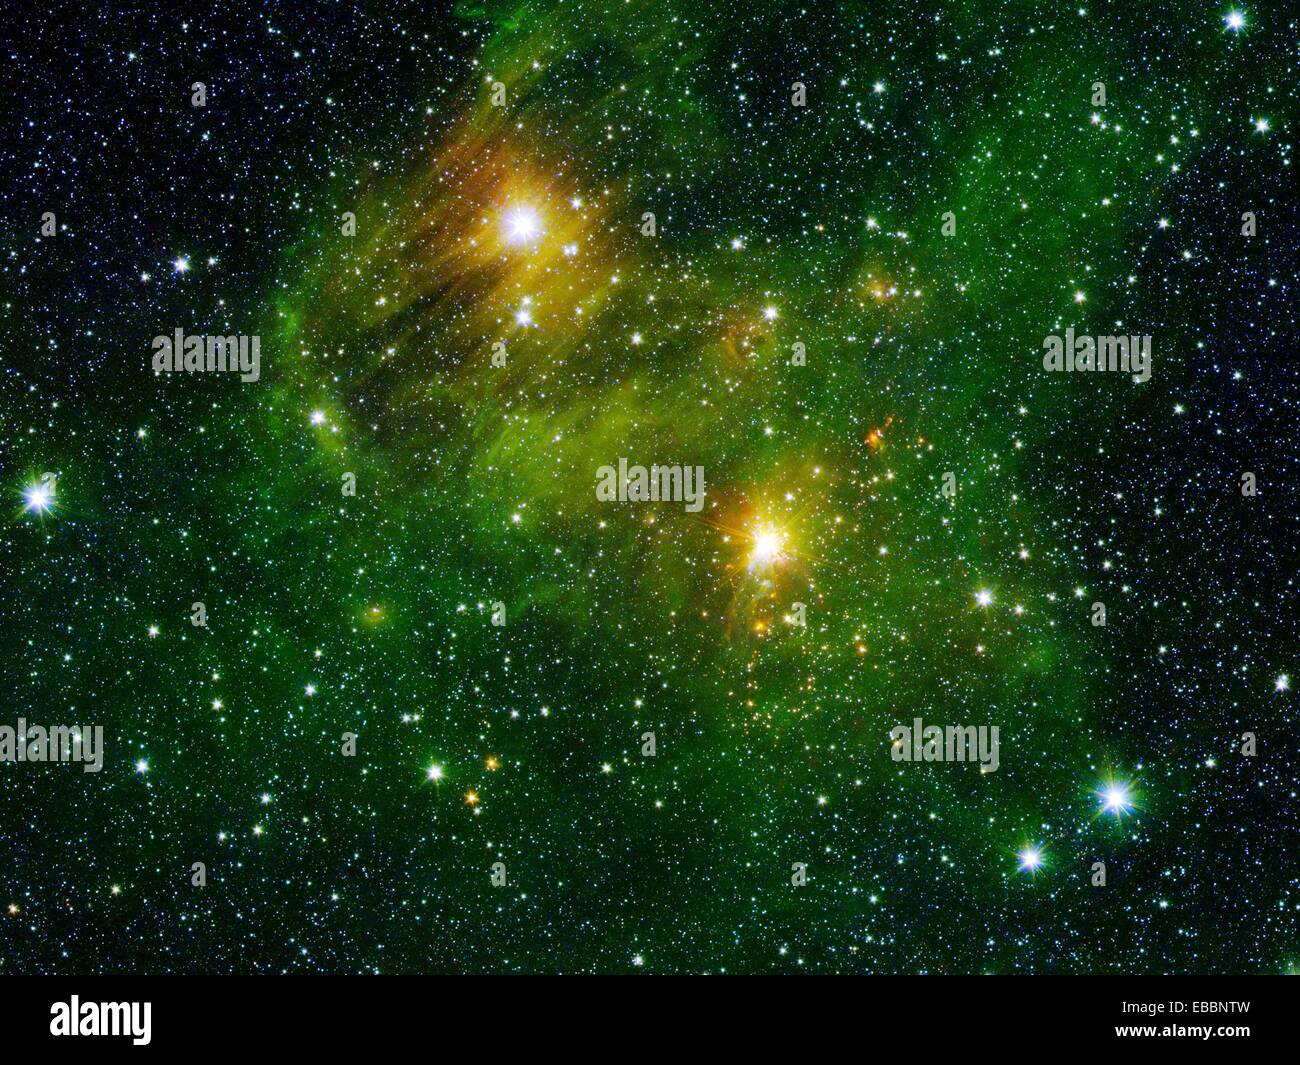 Zwei extrem hellen Sterne beleuchten einen grünlichen Nebel in diesem Bild aus dem Spitzer Space Telescope´s ´GLIMPSE360´ survey Stockfoto